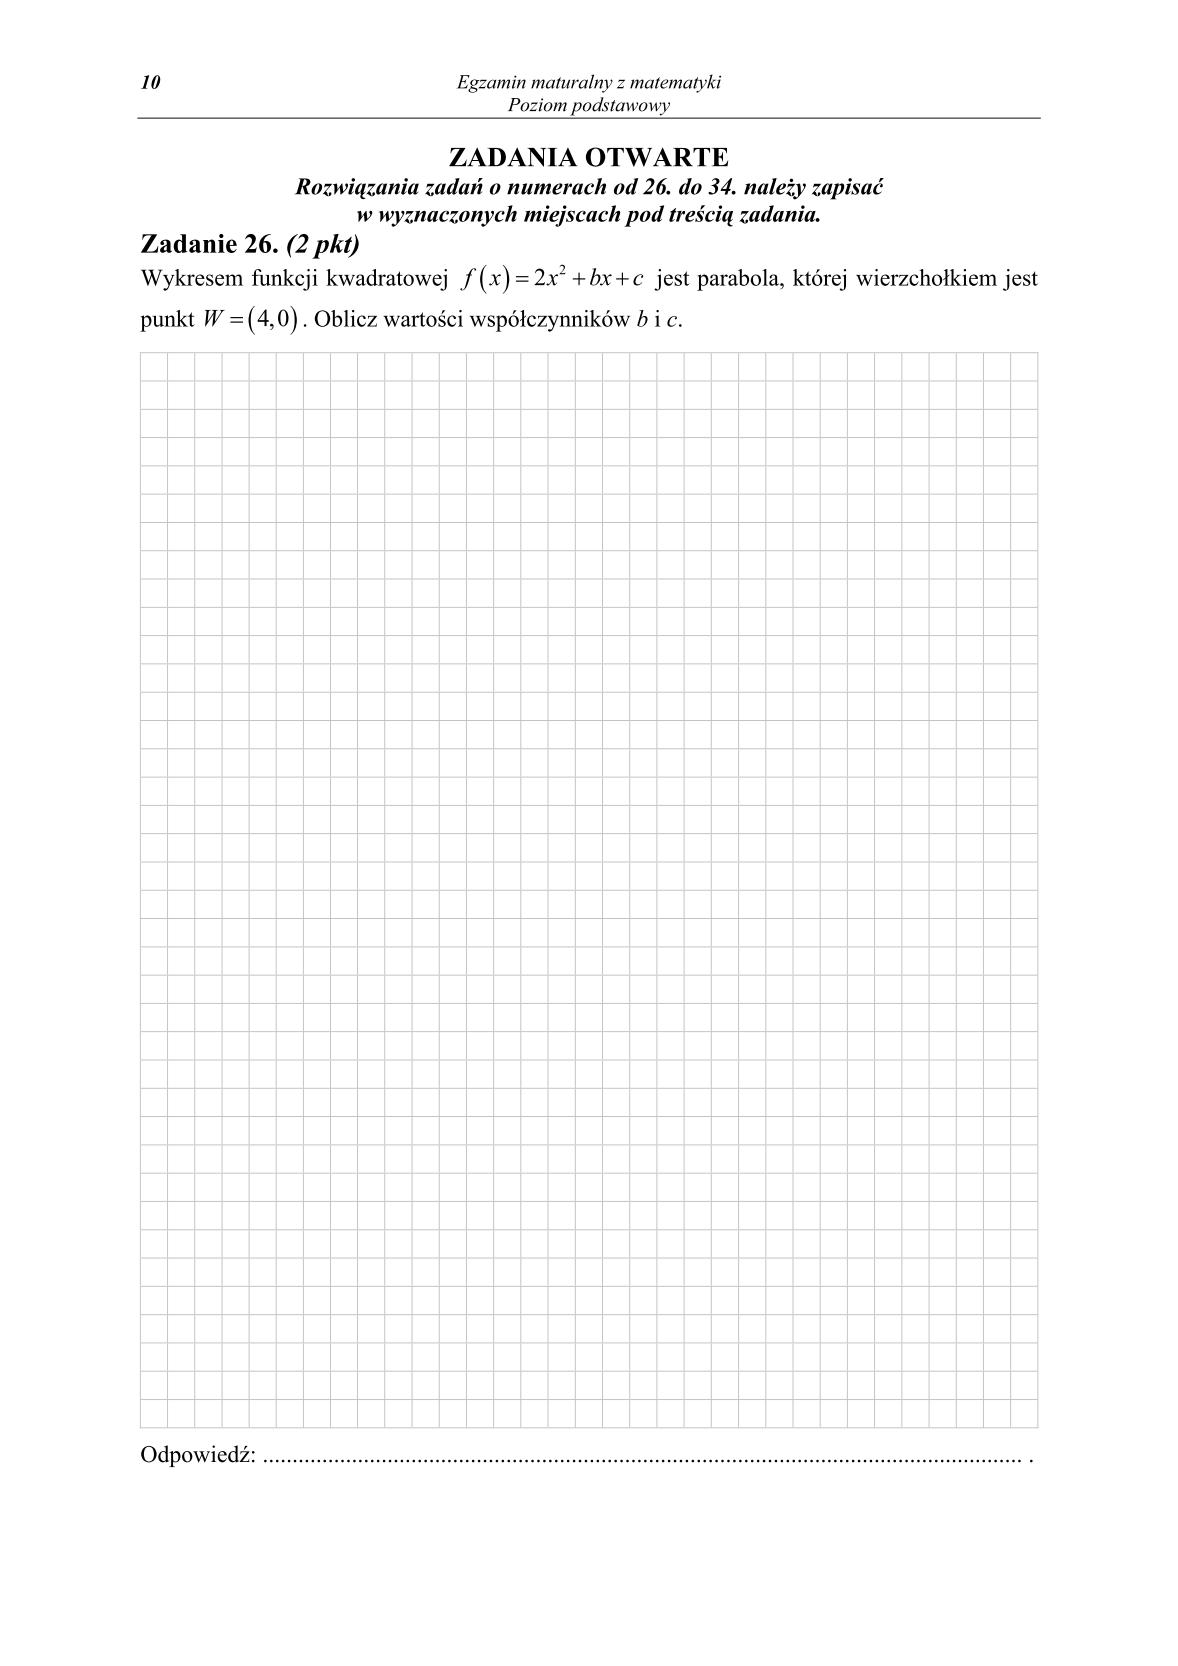 pytania-matematyka-poziom-podstawowy-matura-2014-str.10